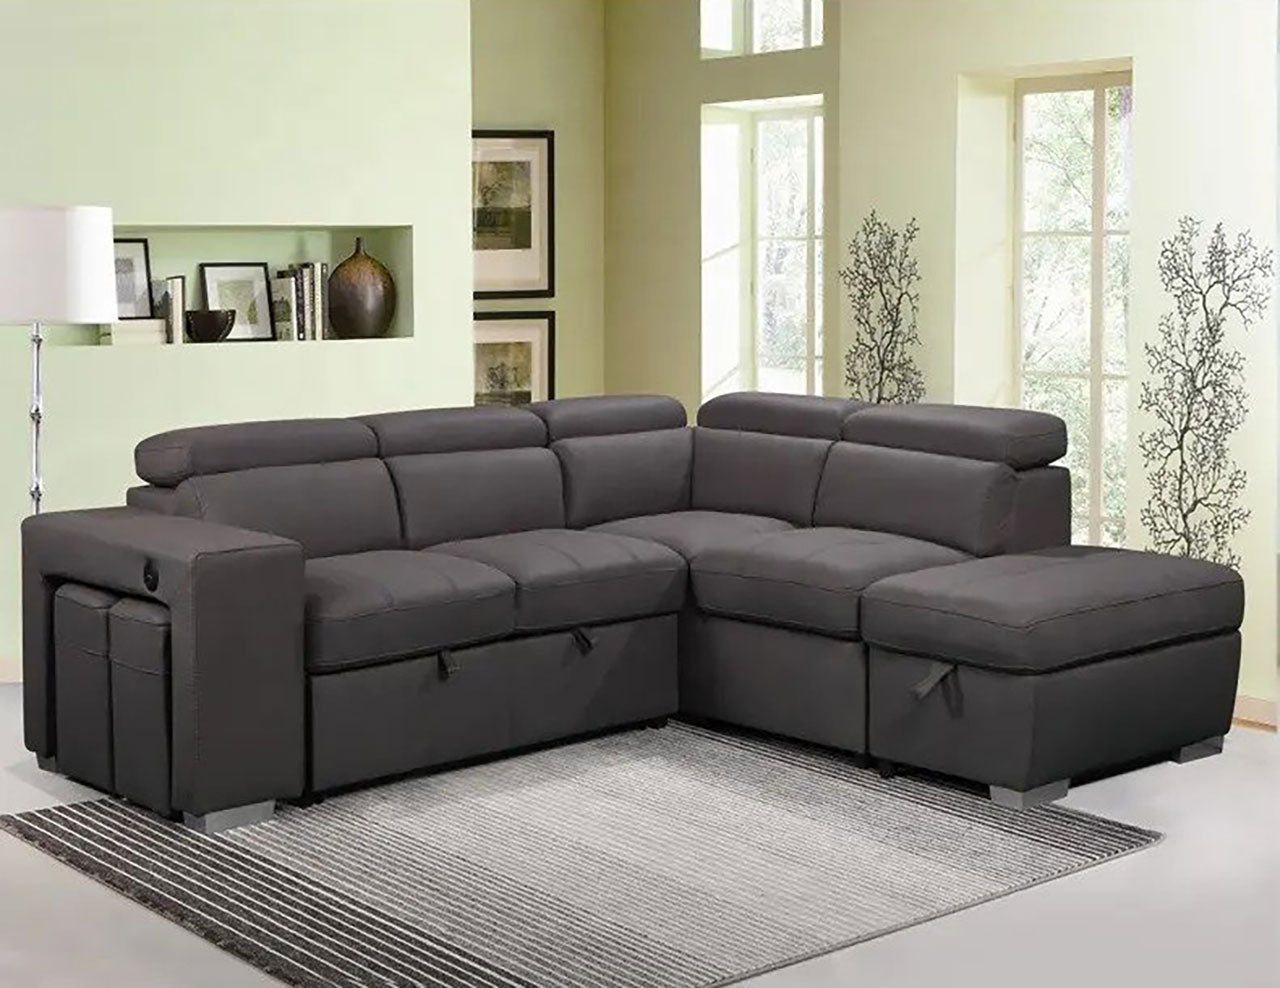 Bighton couch